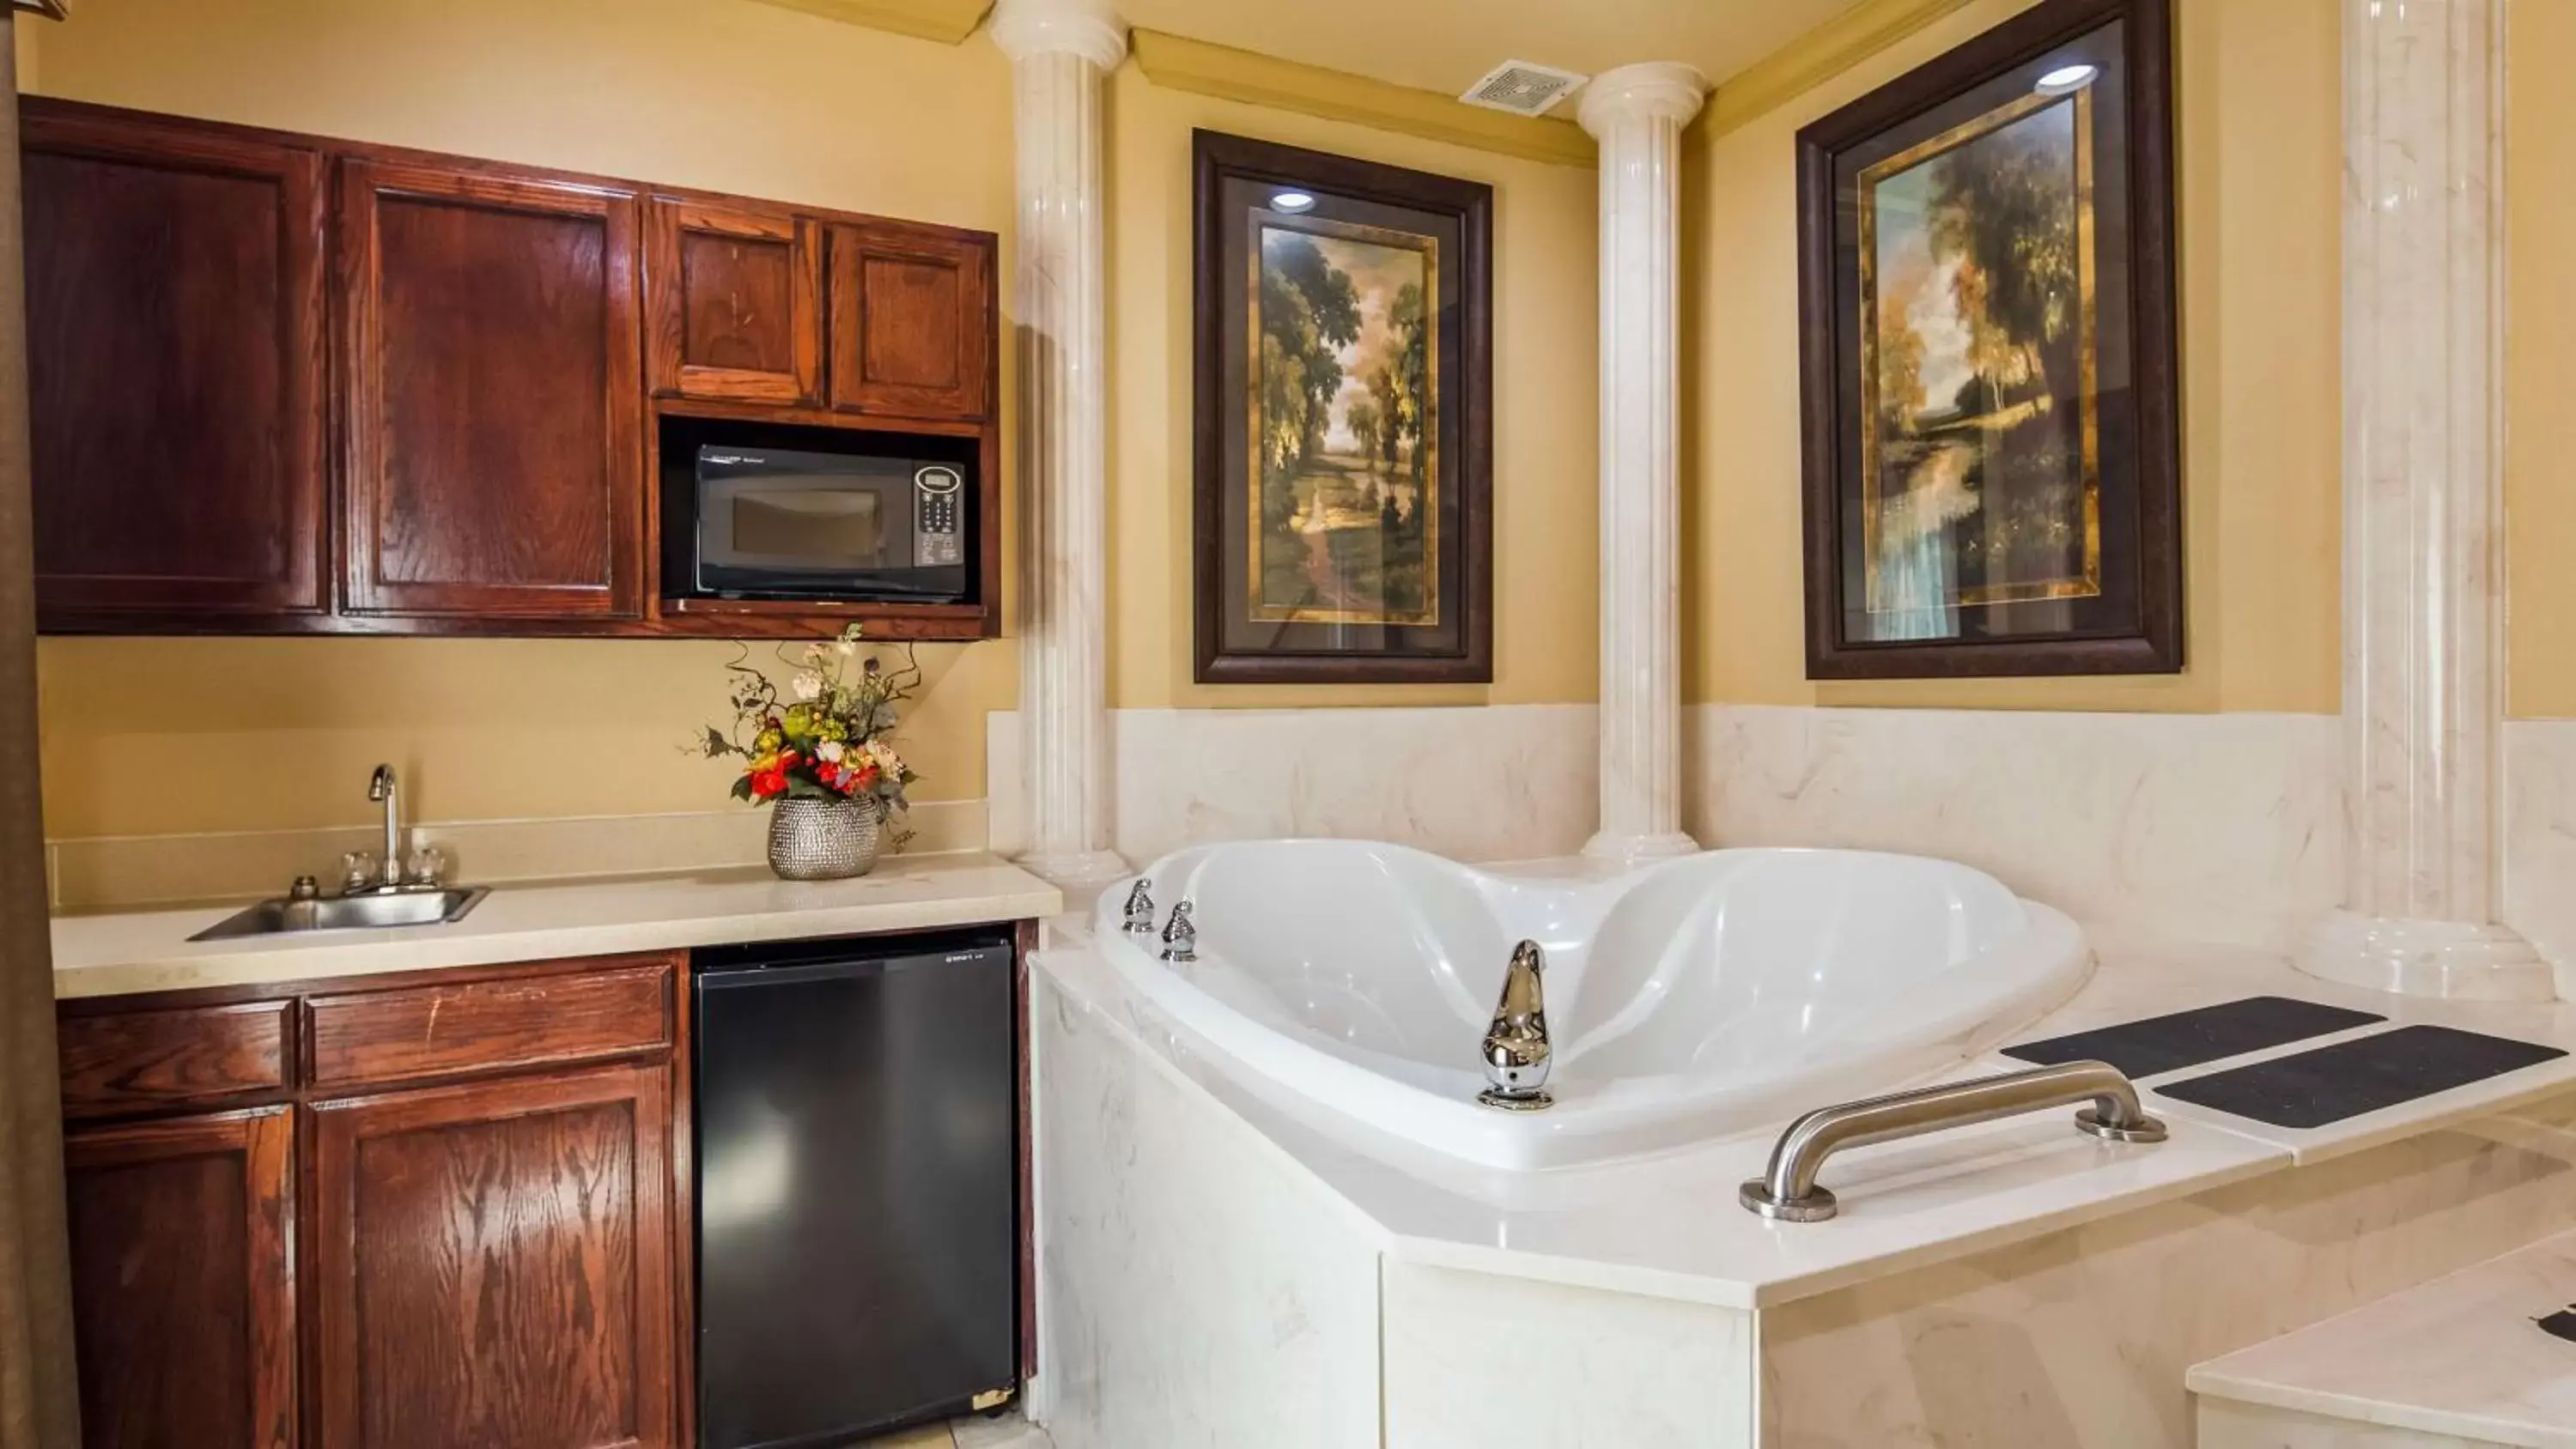 On site, Bathroom in Best Western Plus Crown Colony Inn & Suites